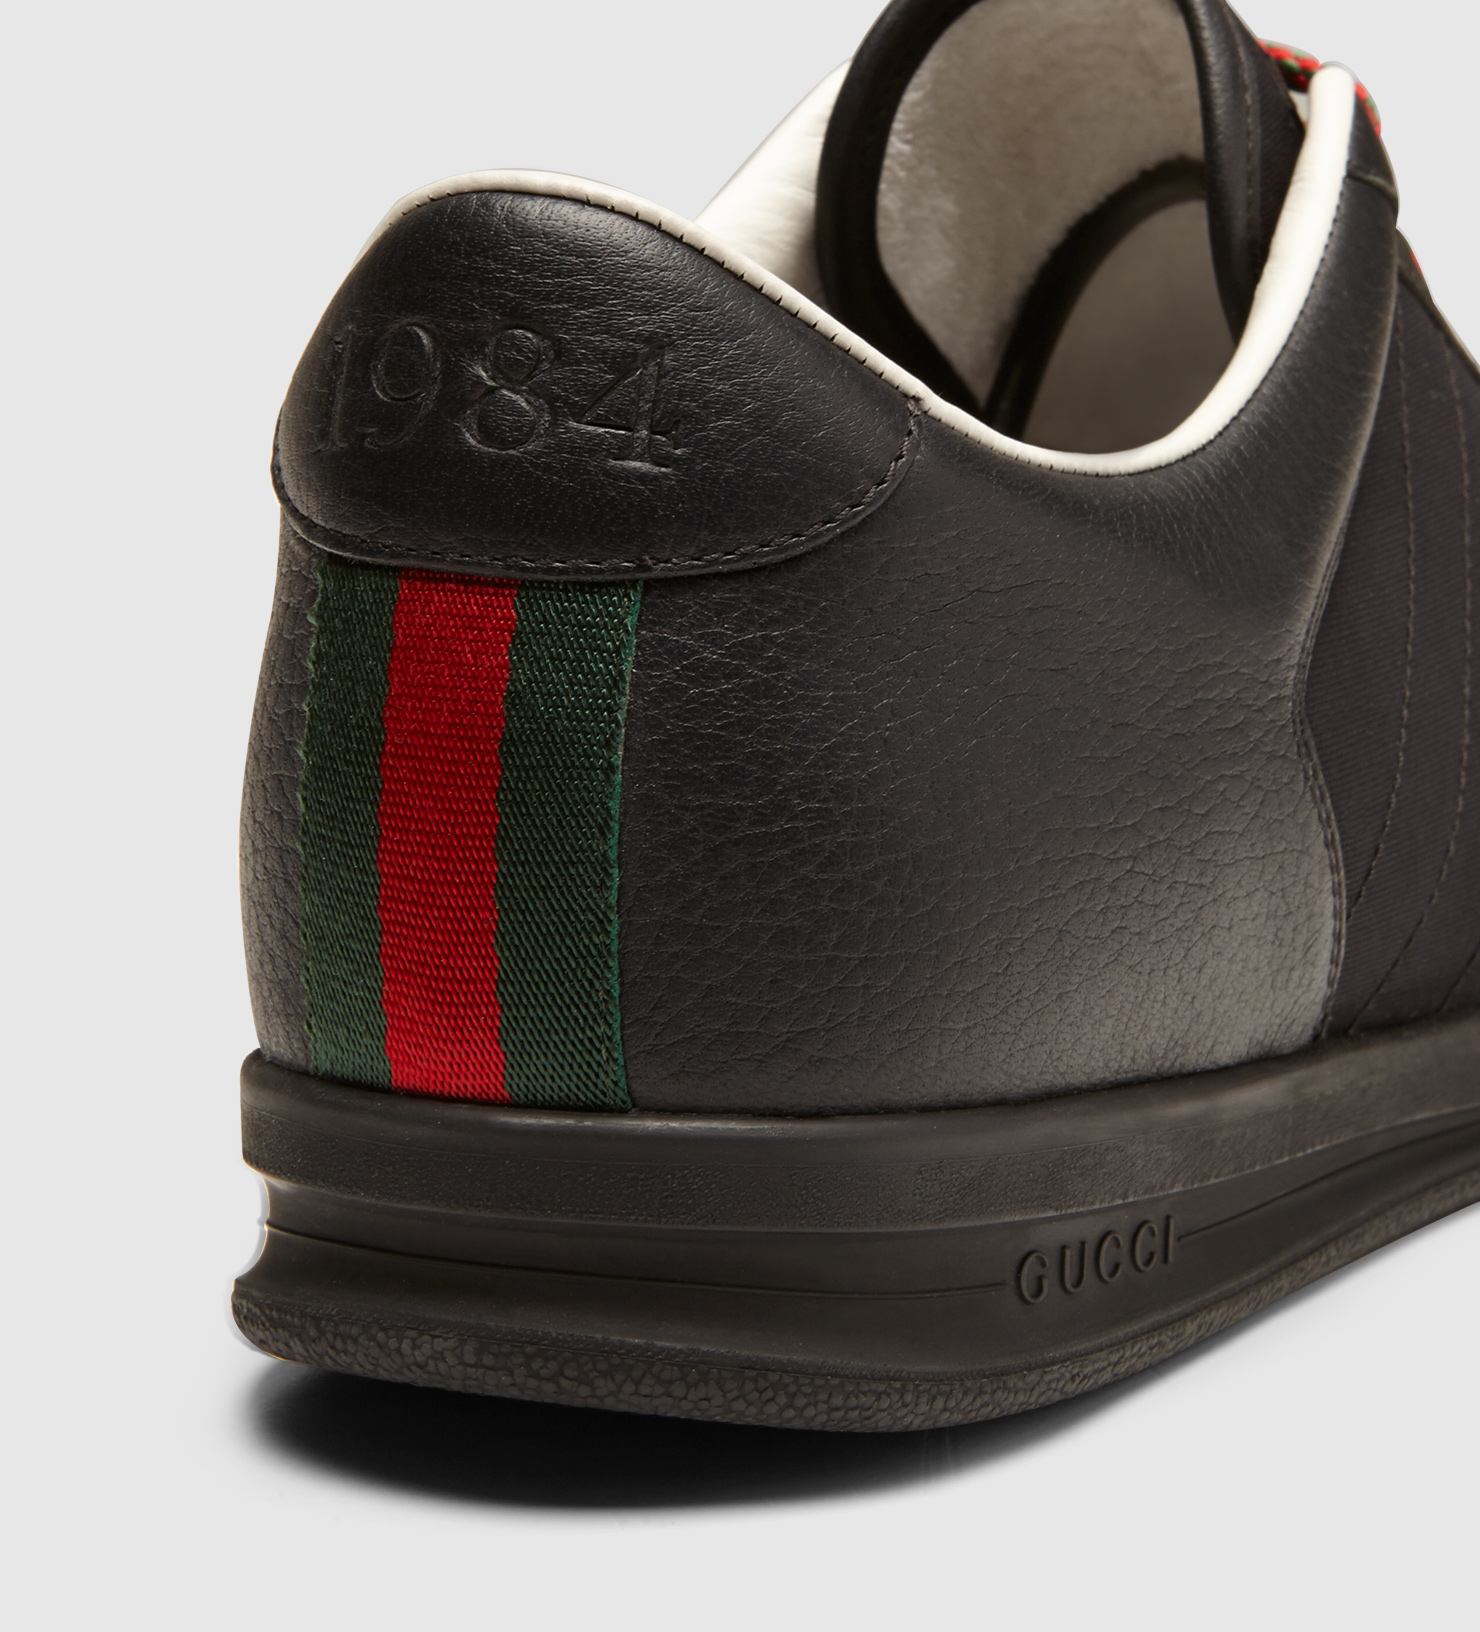 1984 gucci sneaker